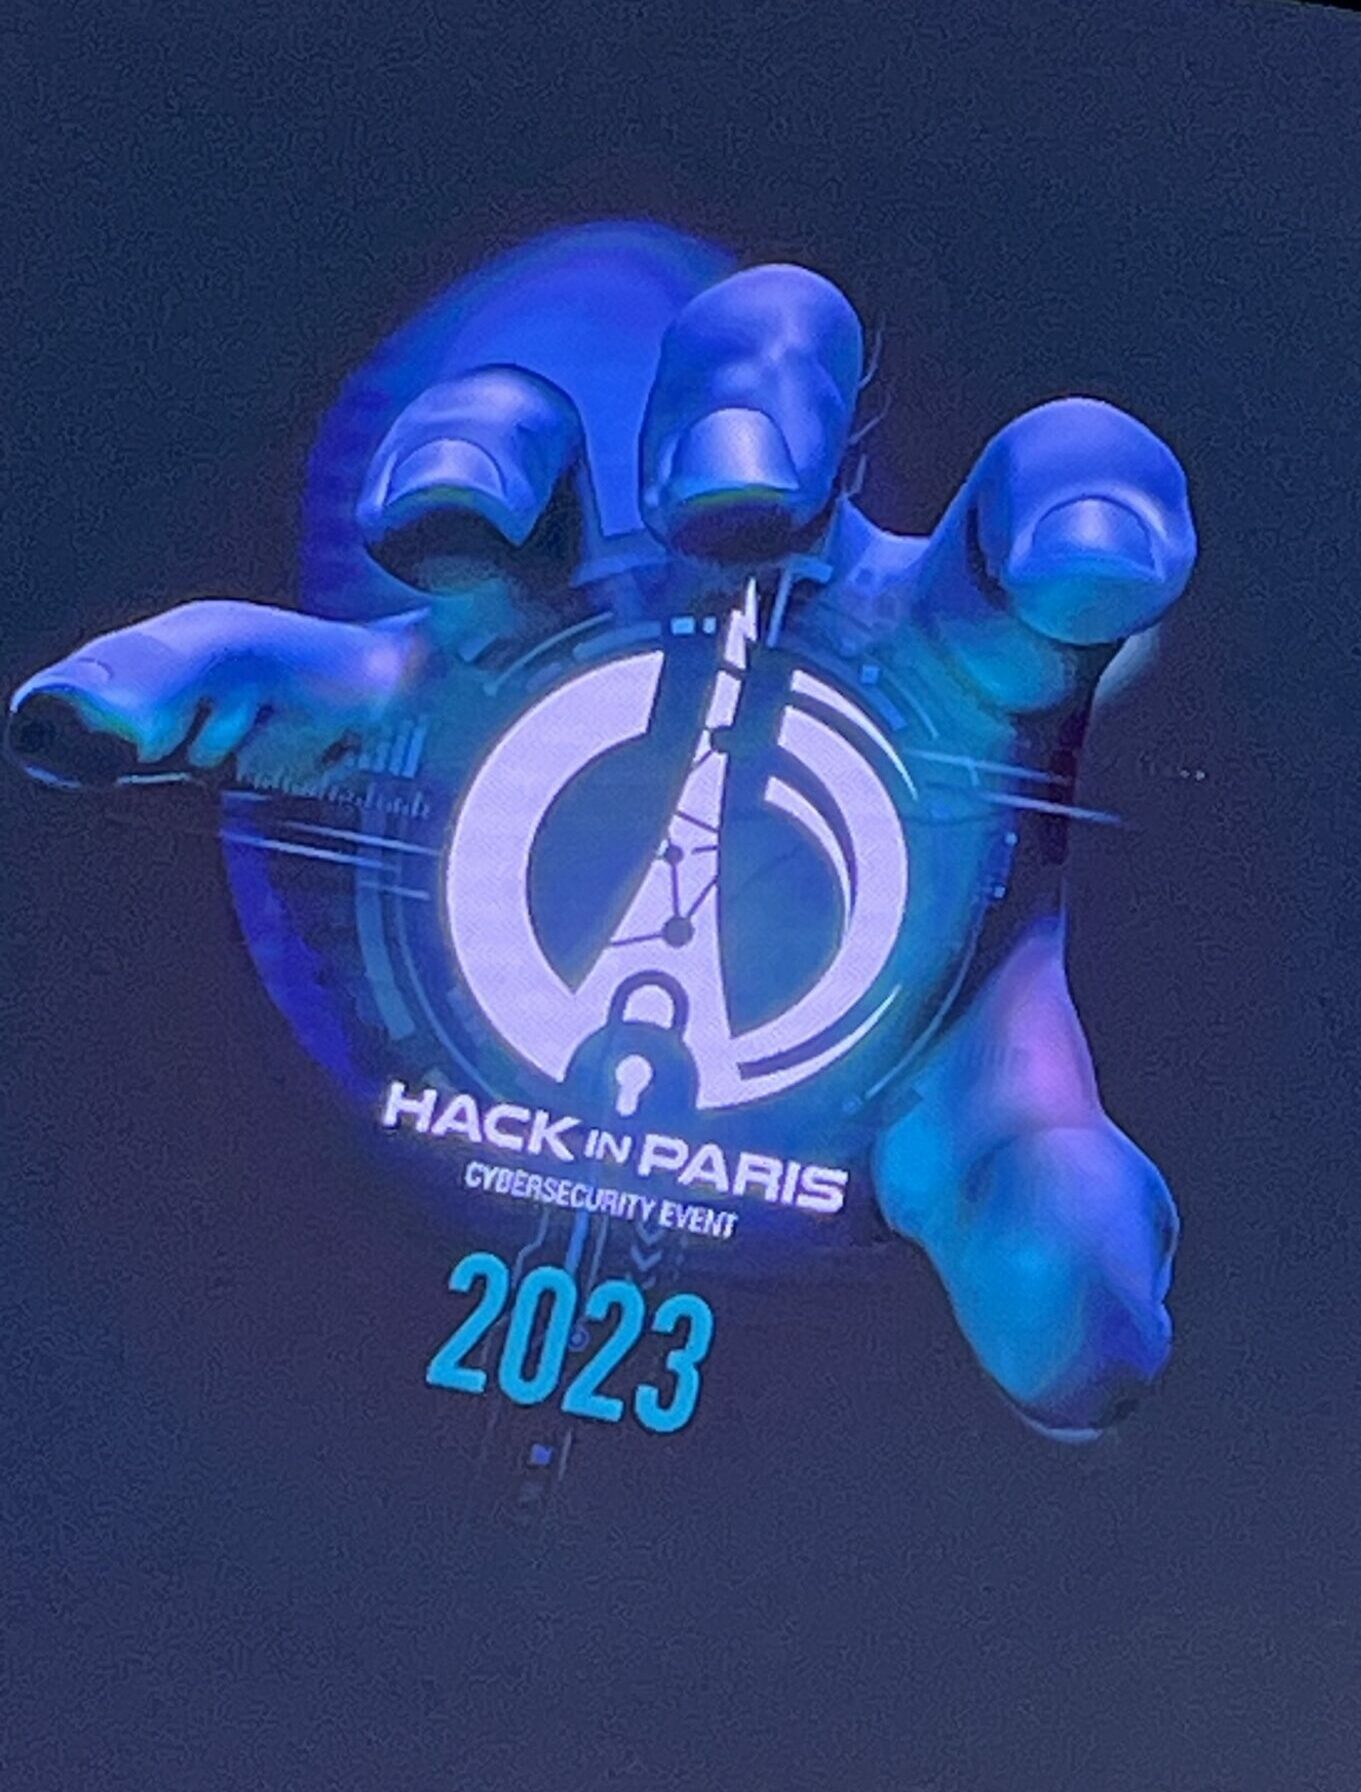 Evènement Hack in Paris sur la cybersécurité en septembre 2023 au chateauform George V